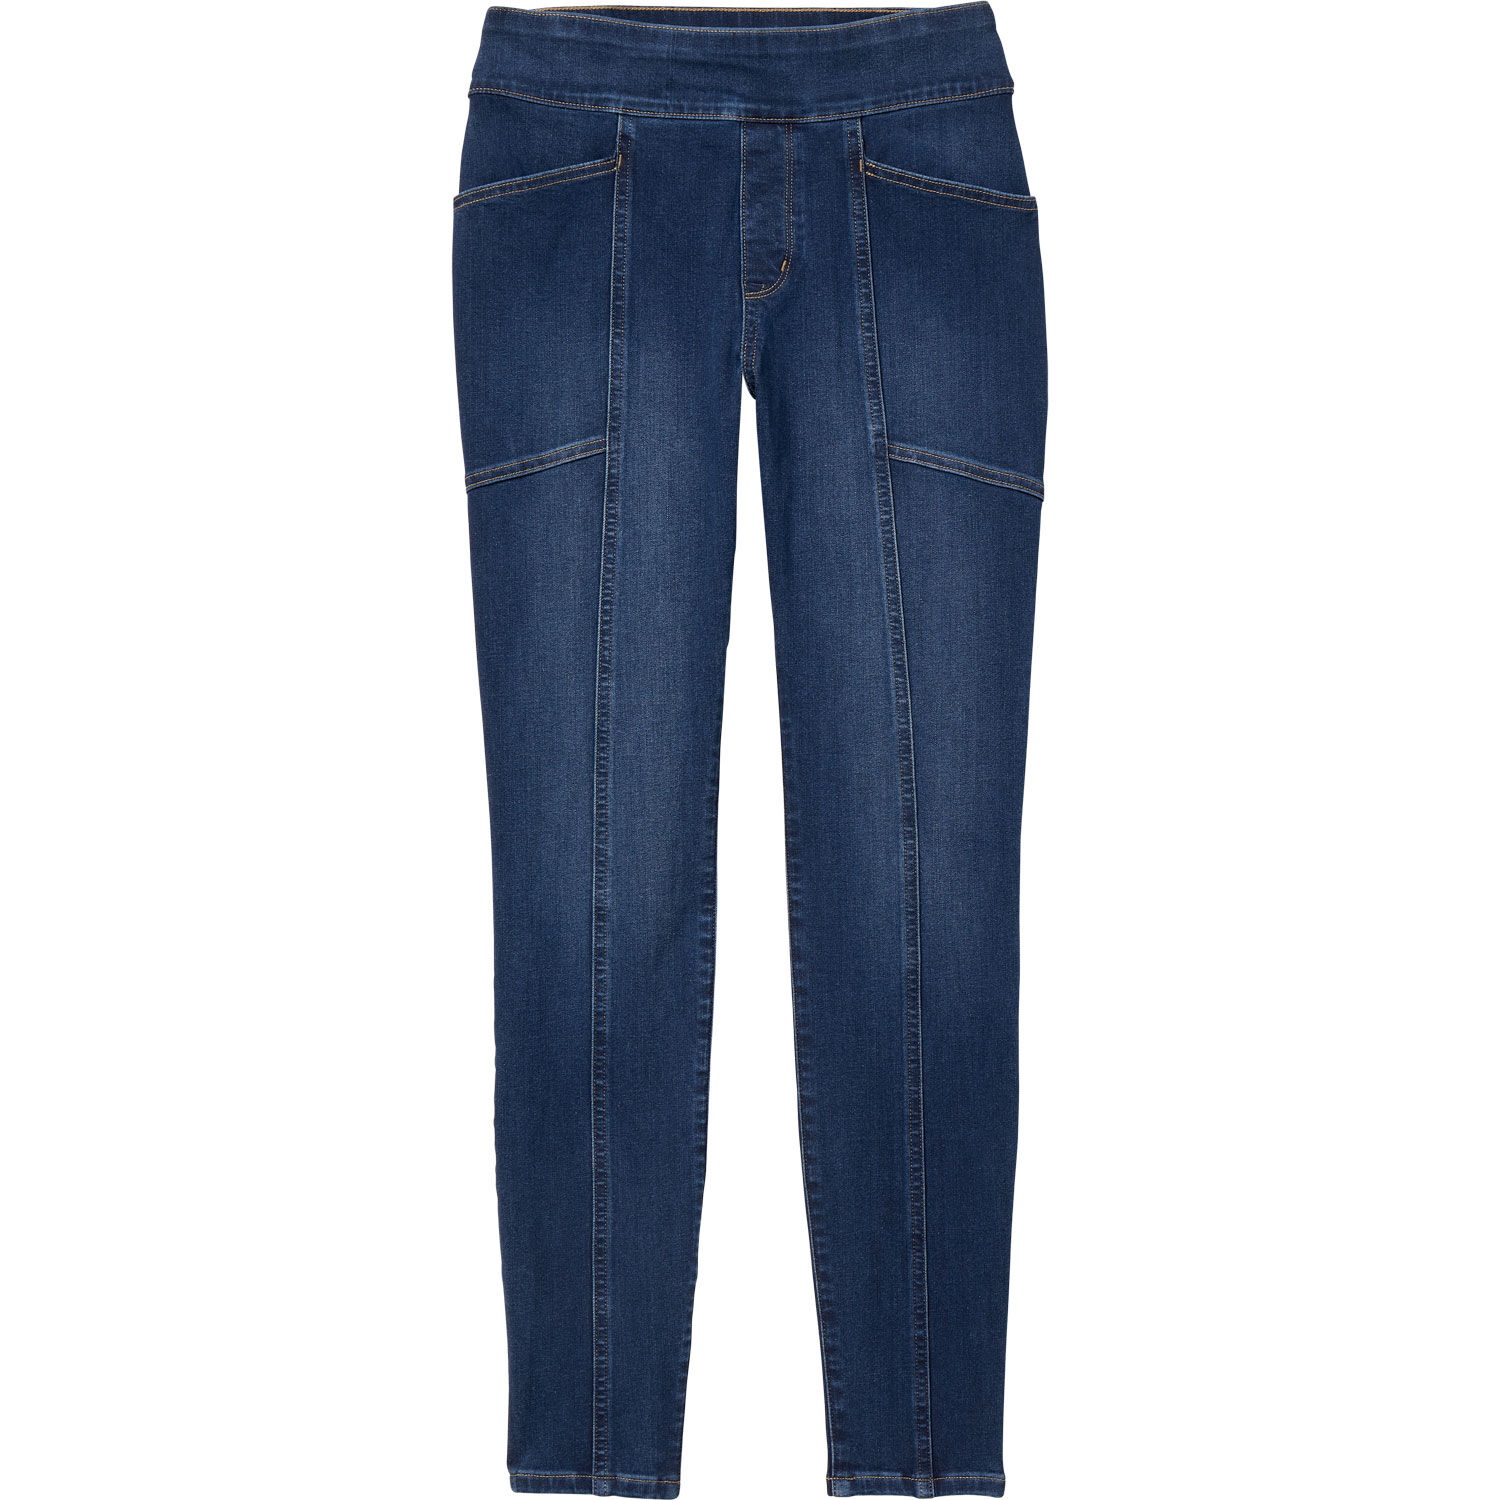 Women's Skinny Jeans - Pitch Black | Boulder Denim 2.0 Collection | Boulder  Denim